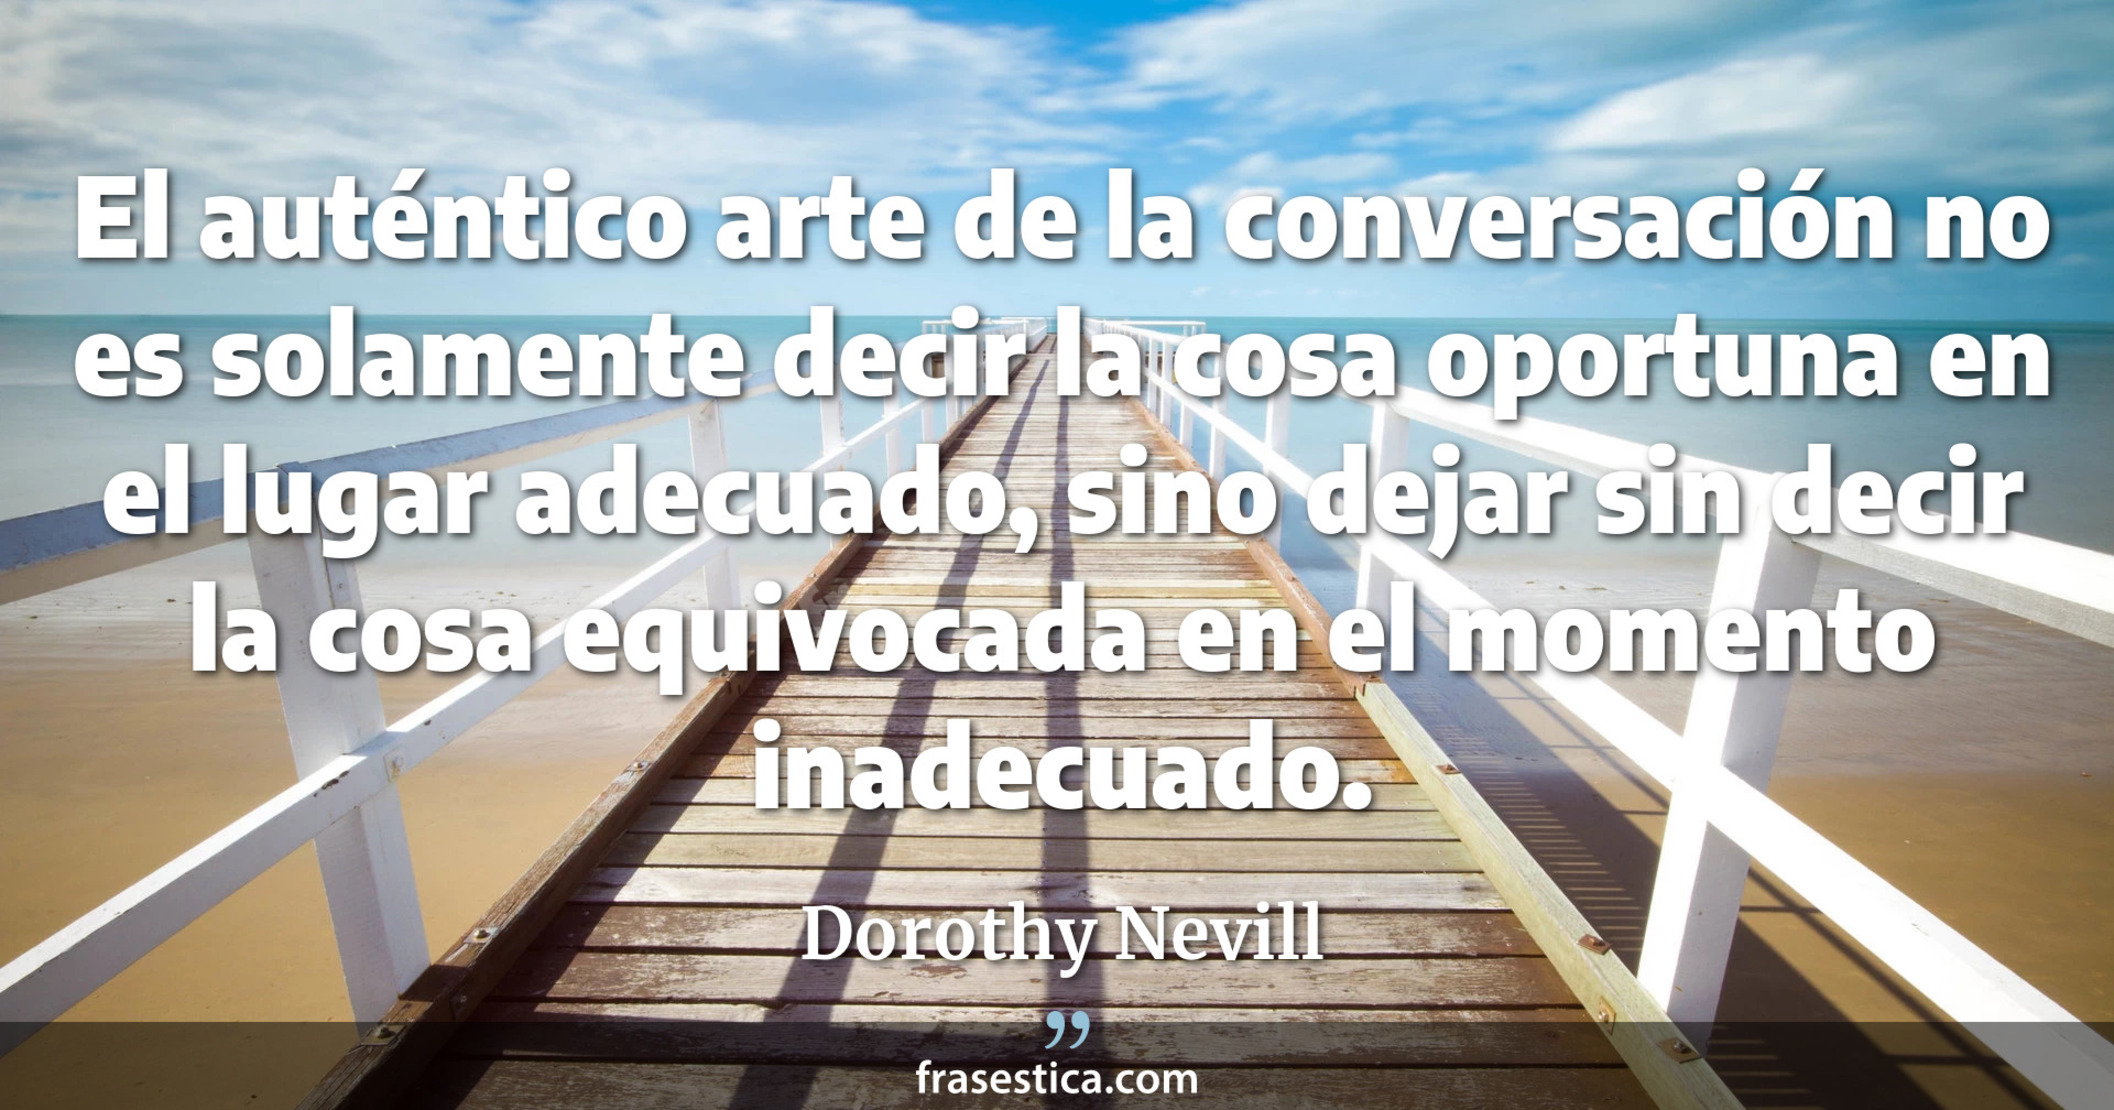 El auténtico arte de la conversación no es solamente decir la cosa oportuna en el lugar adecuado, sino dejar sin decir la cosa equivocada en el momento inadecuado. - Dorothy Nevill